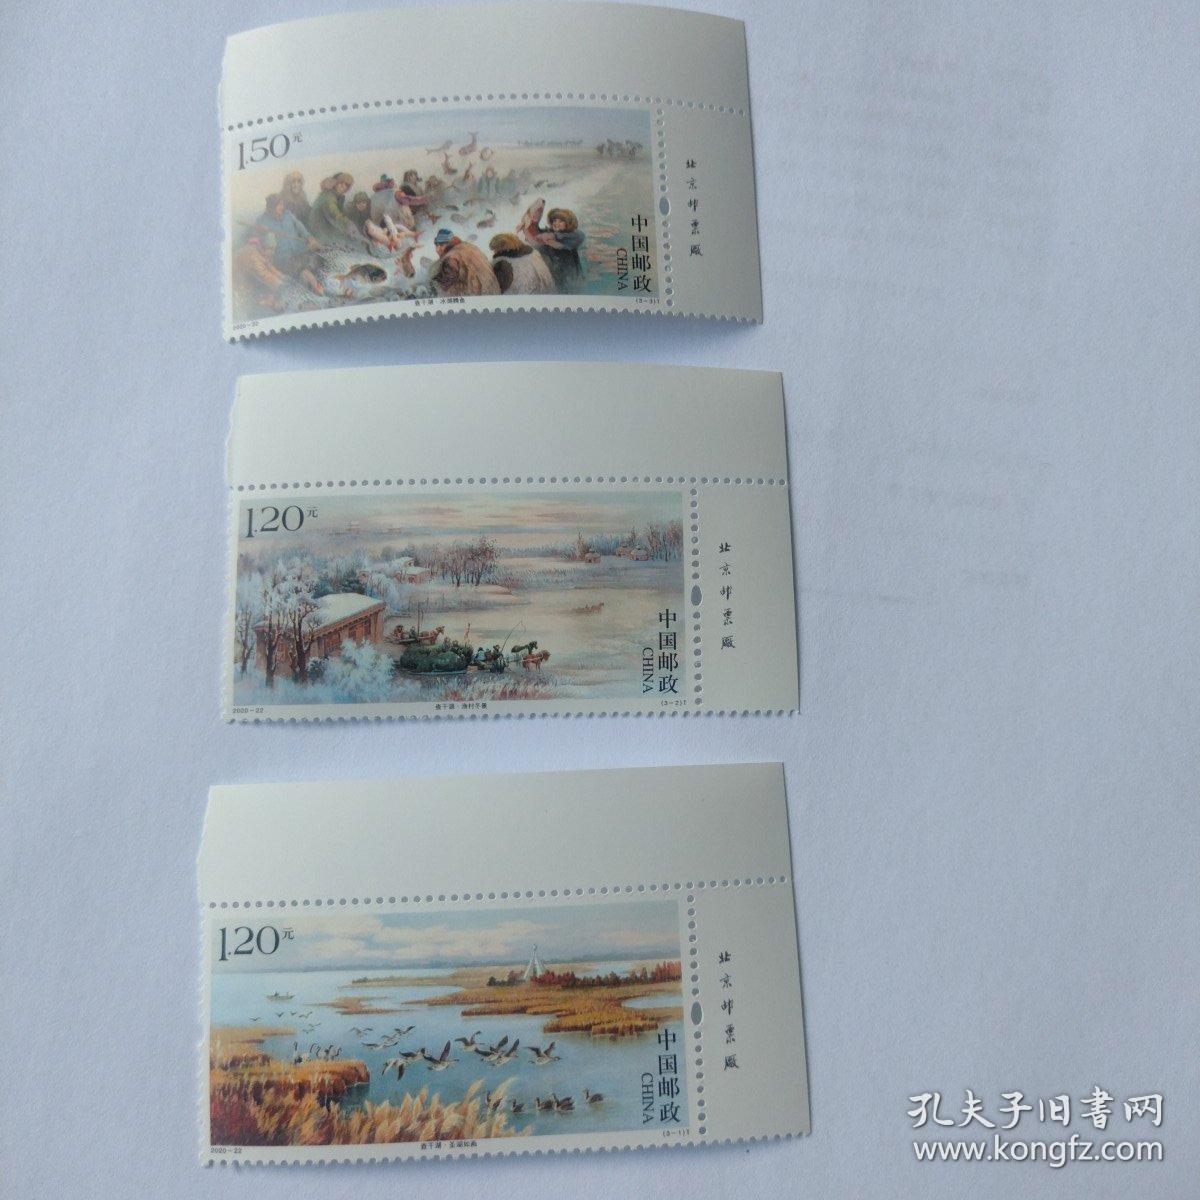 2020-22右上厂名邮票